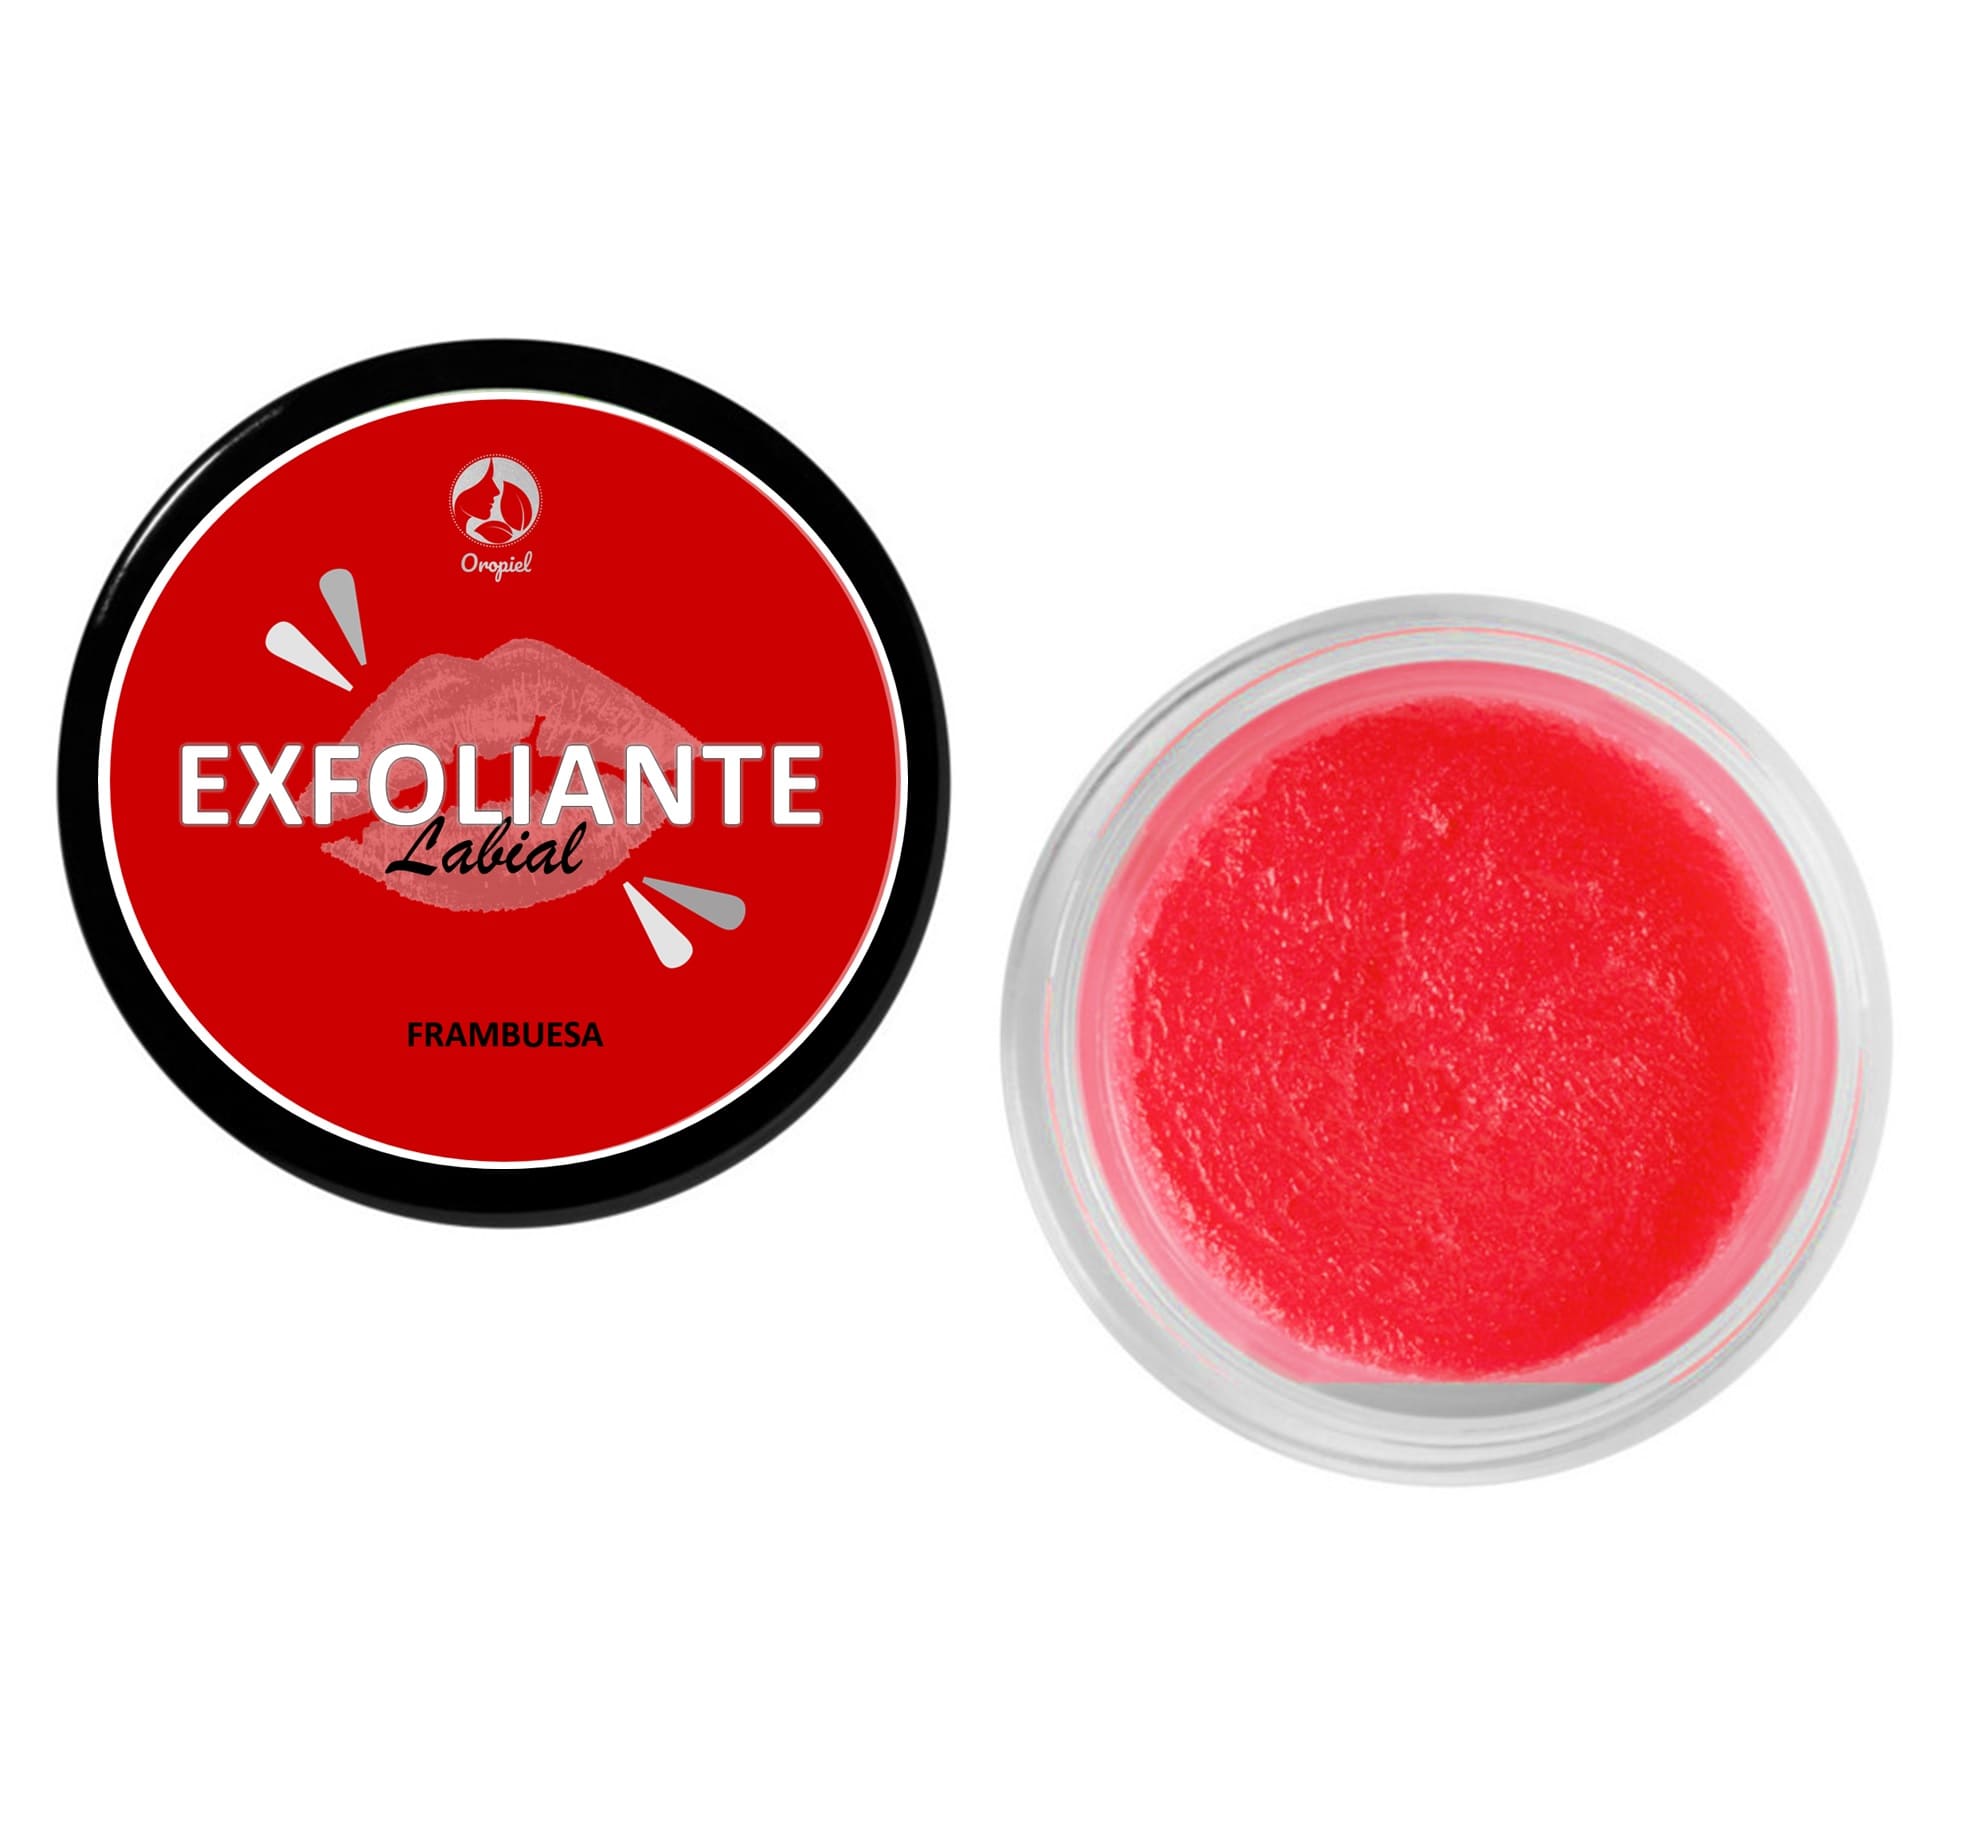 Exfoliante labial frambuesa Chile humectante labios secos | Oropiel